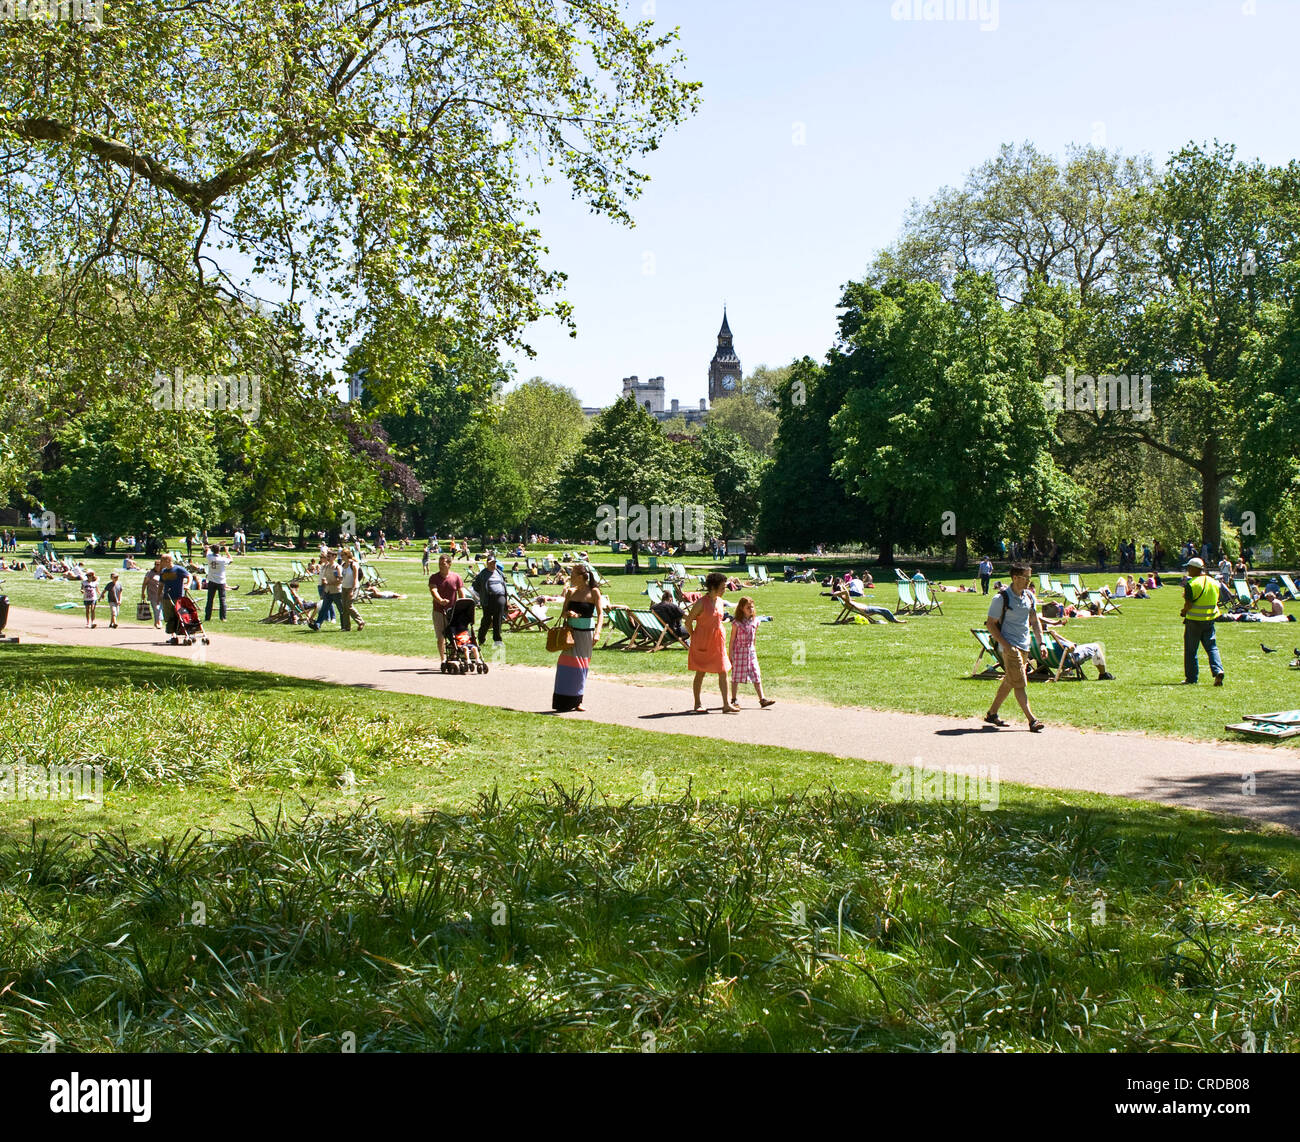 Les foules à bronzer et se détendre au soleil St James Park Londres Angleterre Europe Banque D'Images